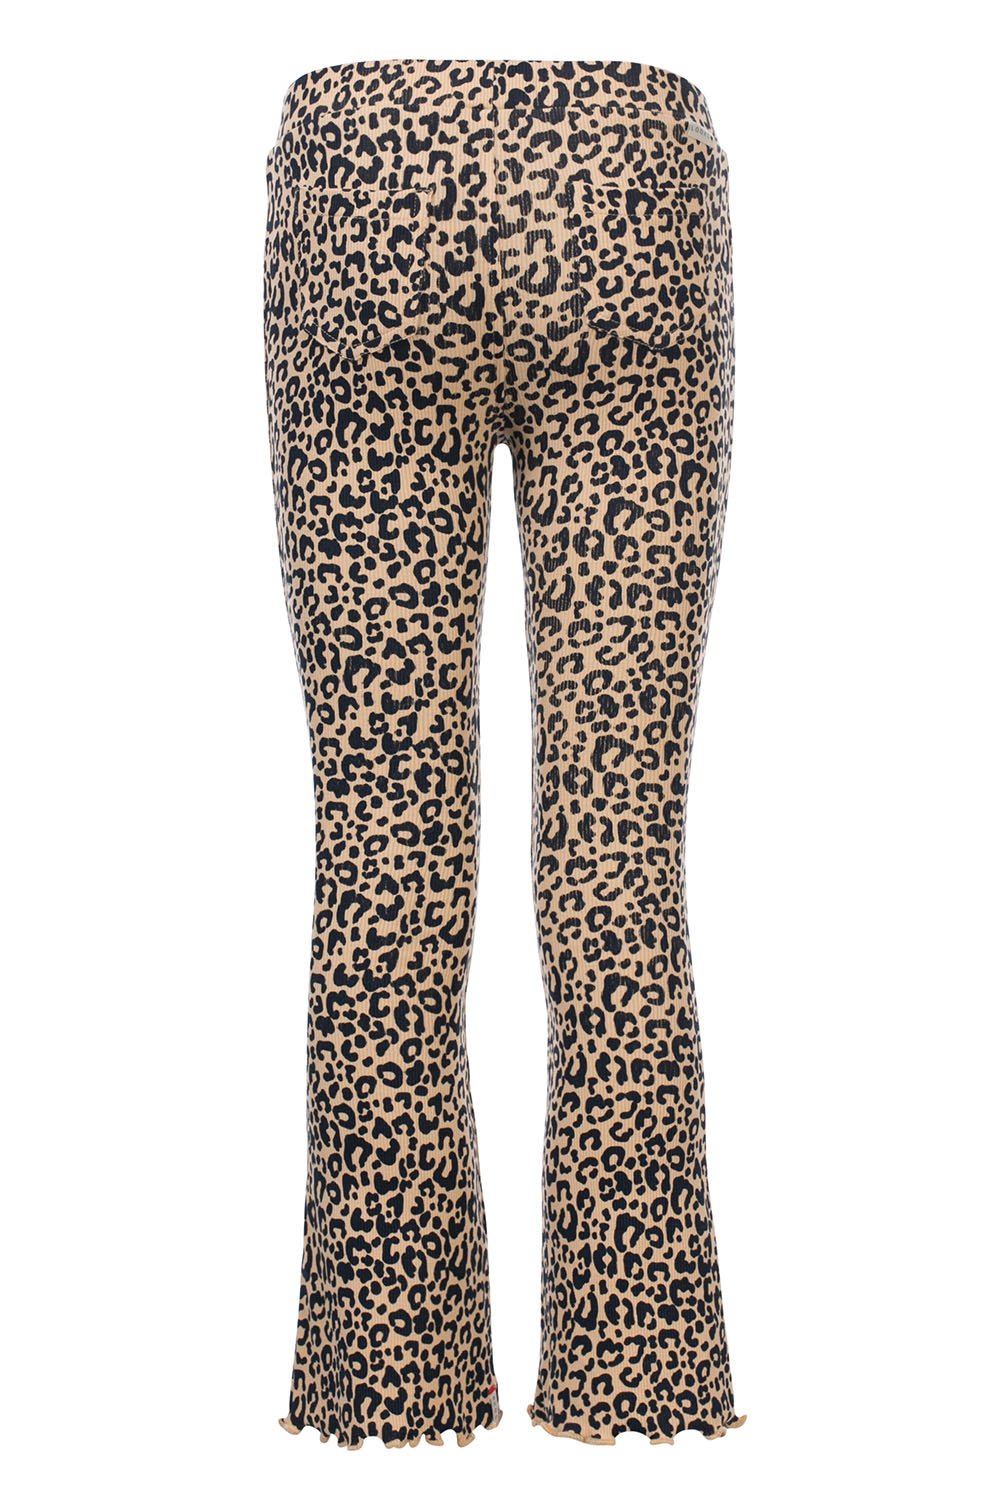 Meisjes Little leopard rib flare pants van LOOXS Little in de kleur sandy leopard in maat 128.